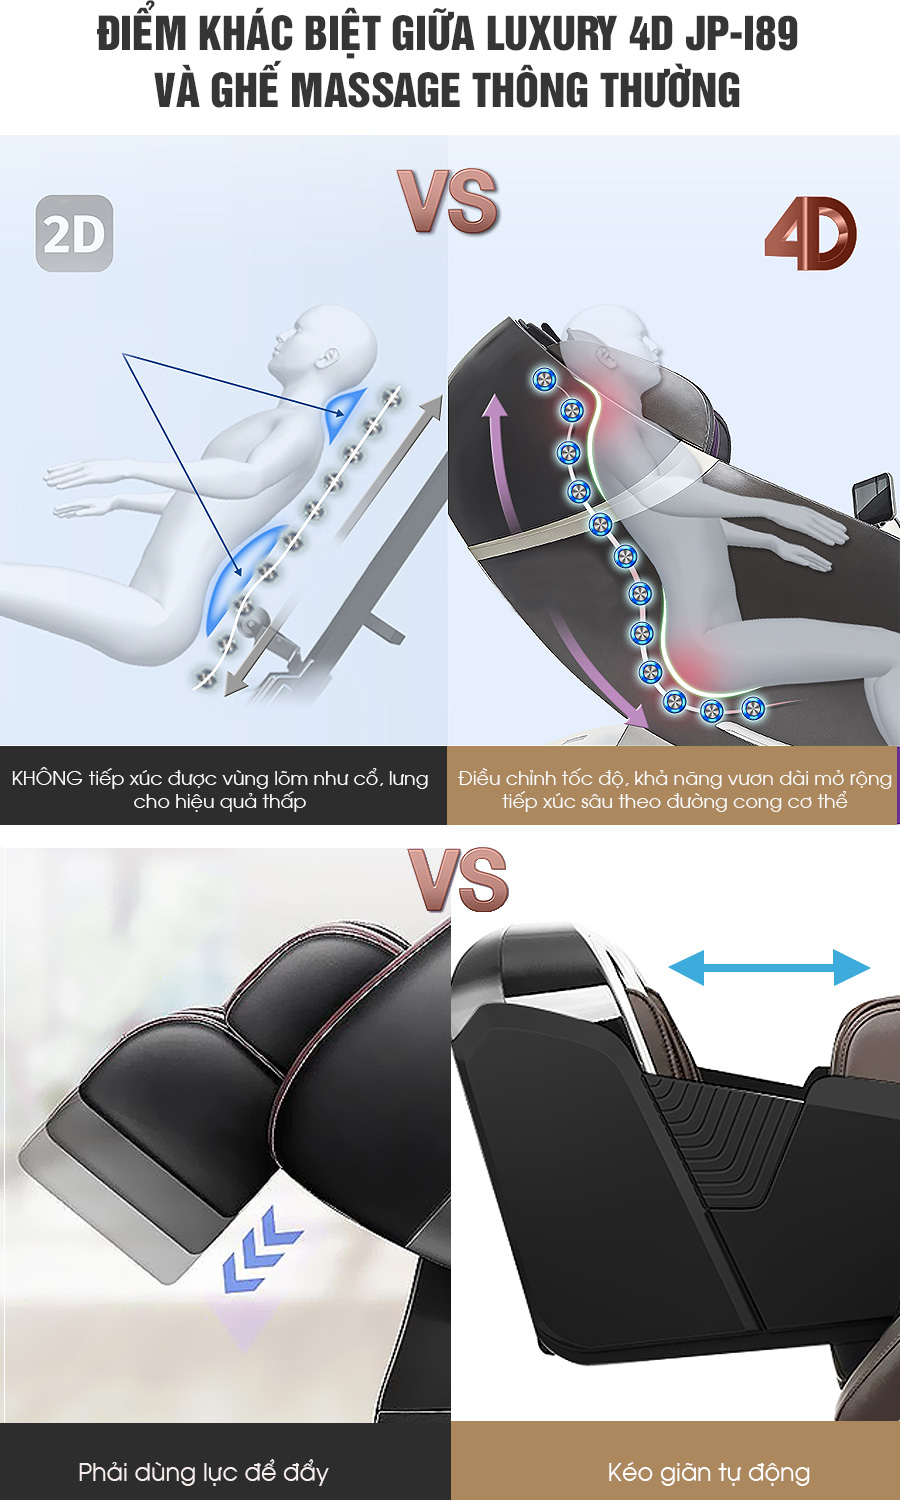 điểm khác biệt giữ ghế massage luxury 4D và ghế massage thông thường